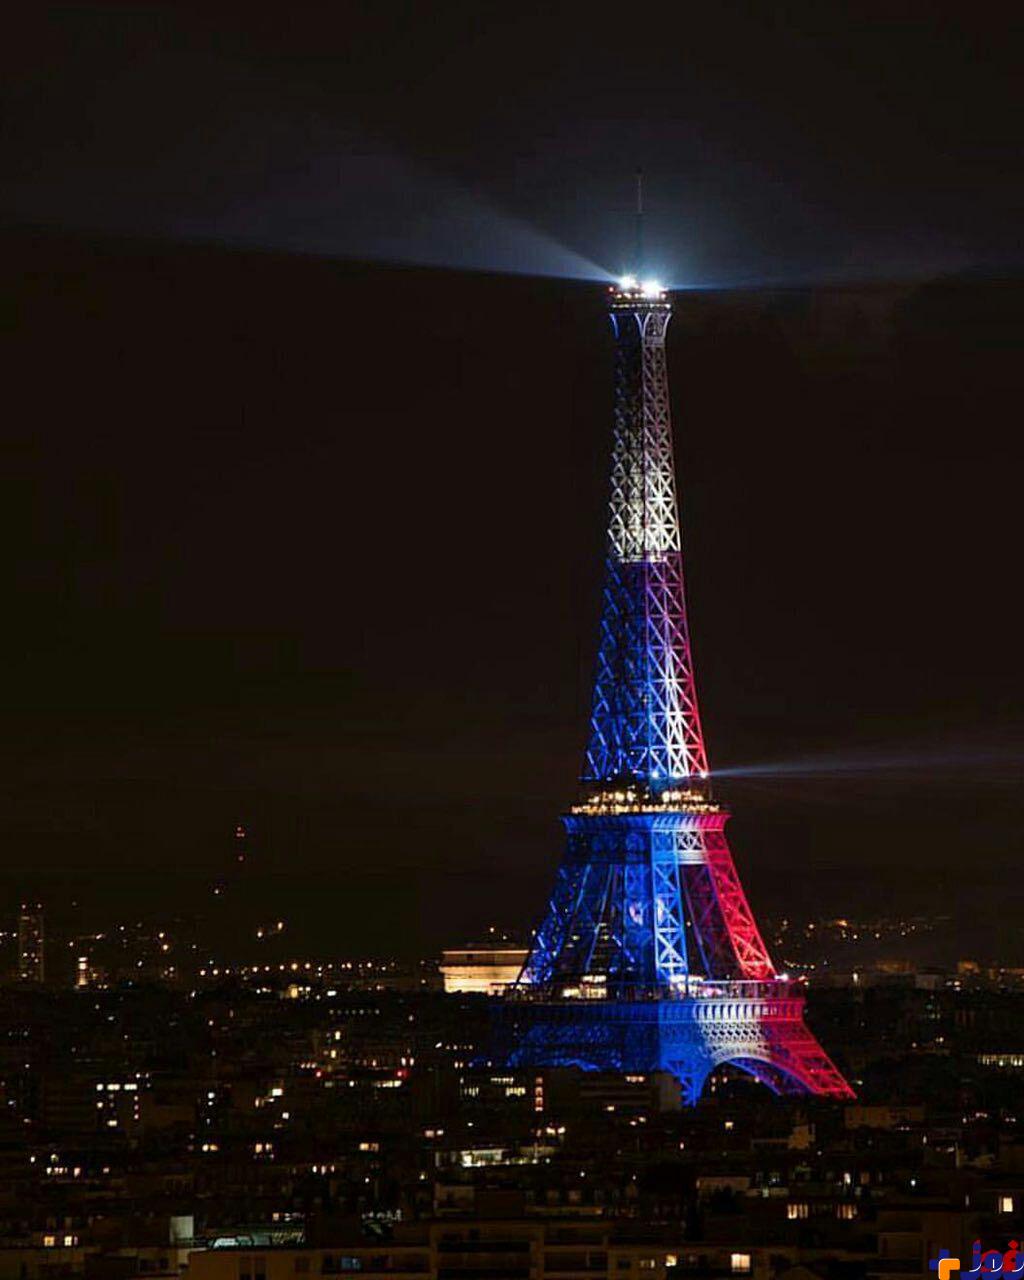 زیباسازی برج ایفل برای پیروزی تیم فوتبال فرانسه /عکس